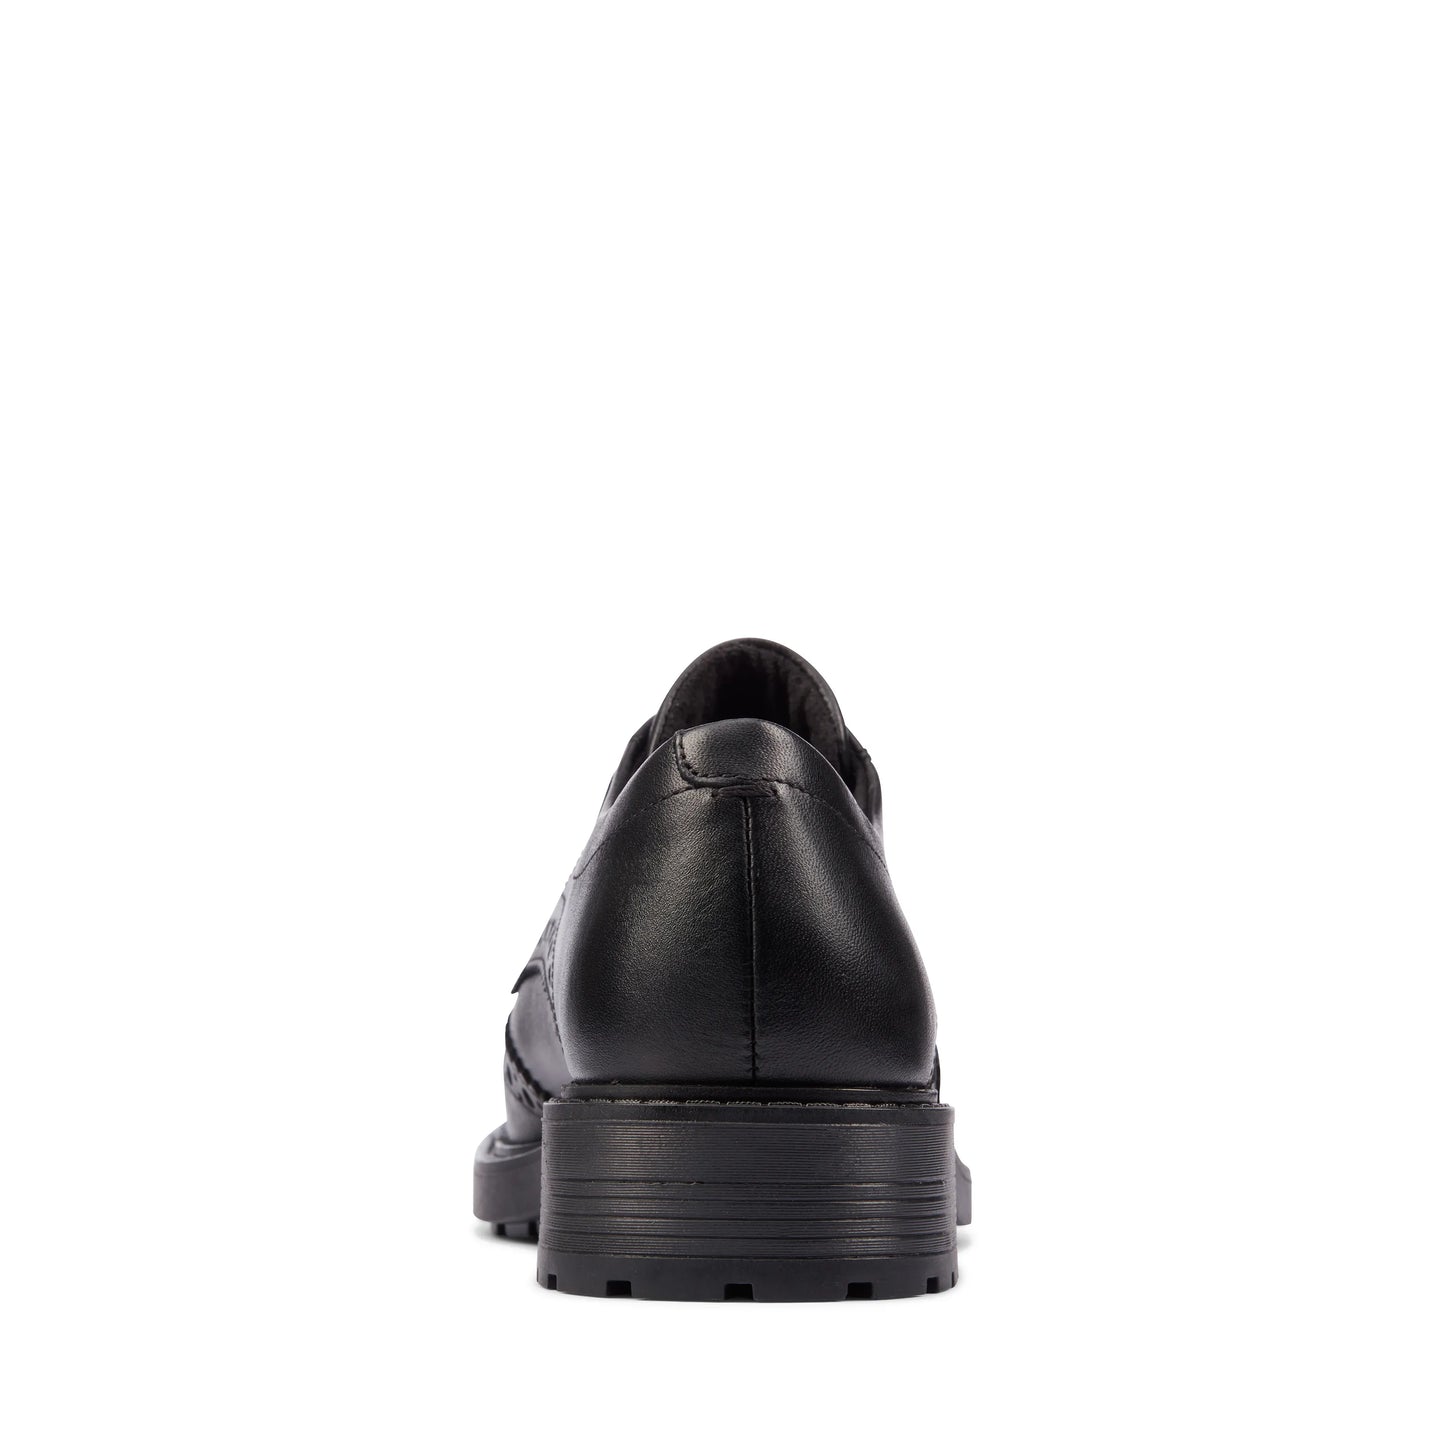 CLARKS | أحذية ديربي للنساء | ORINOCO2 LIMIT BLACK LEATHER | أسود